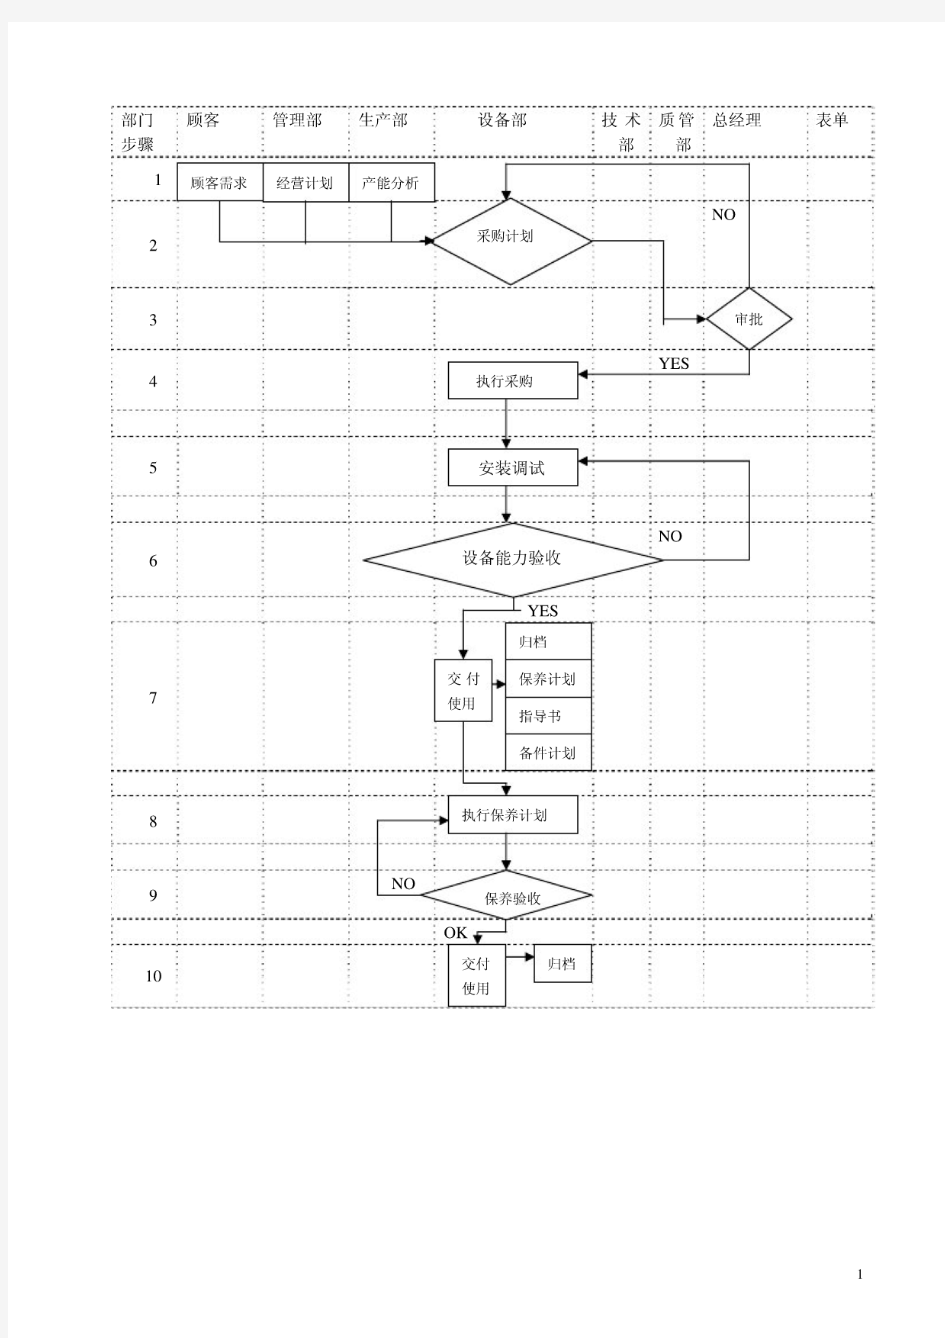 设备管理程序流程图